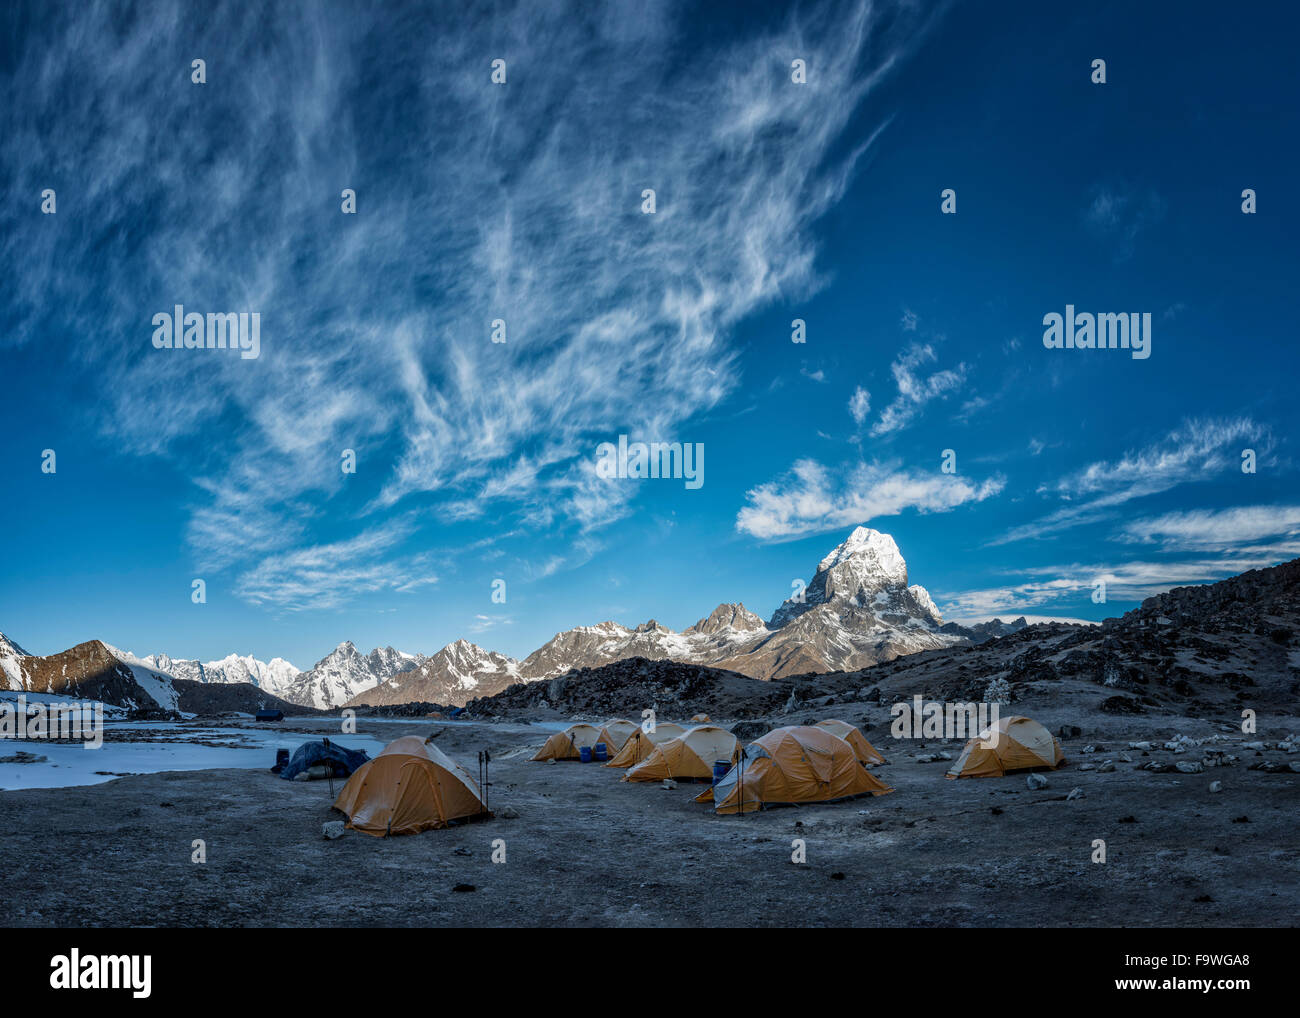 Everest-Region, Ama Dablam Basislager, Khumbu, Nepal, Himalaya Stockfoto